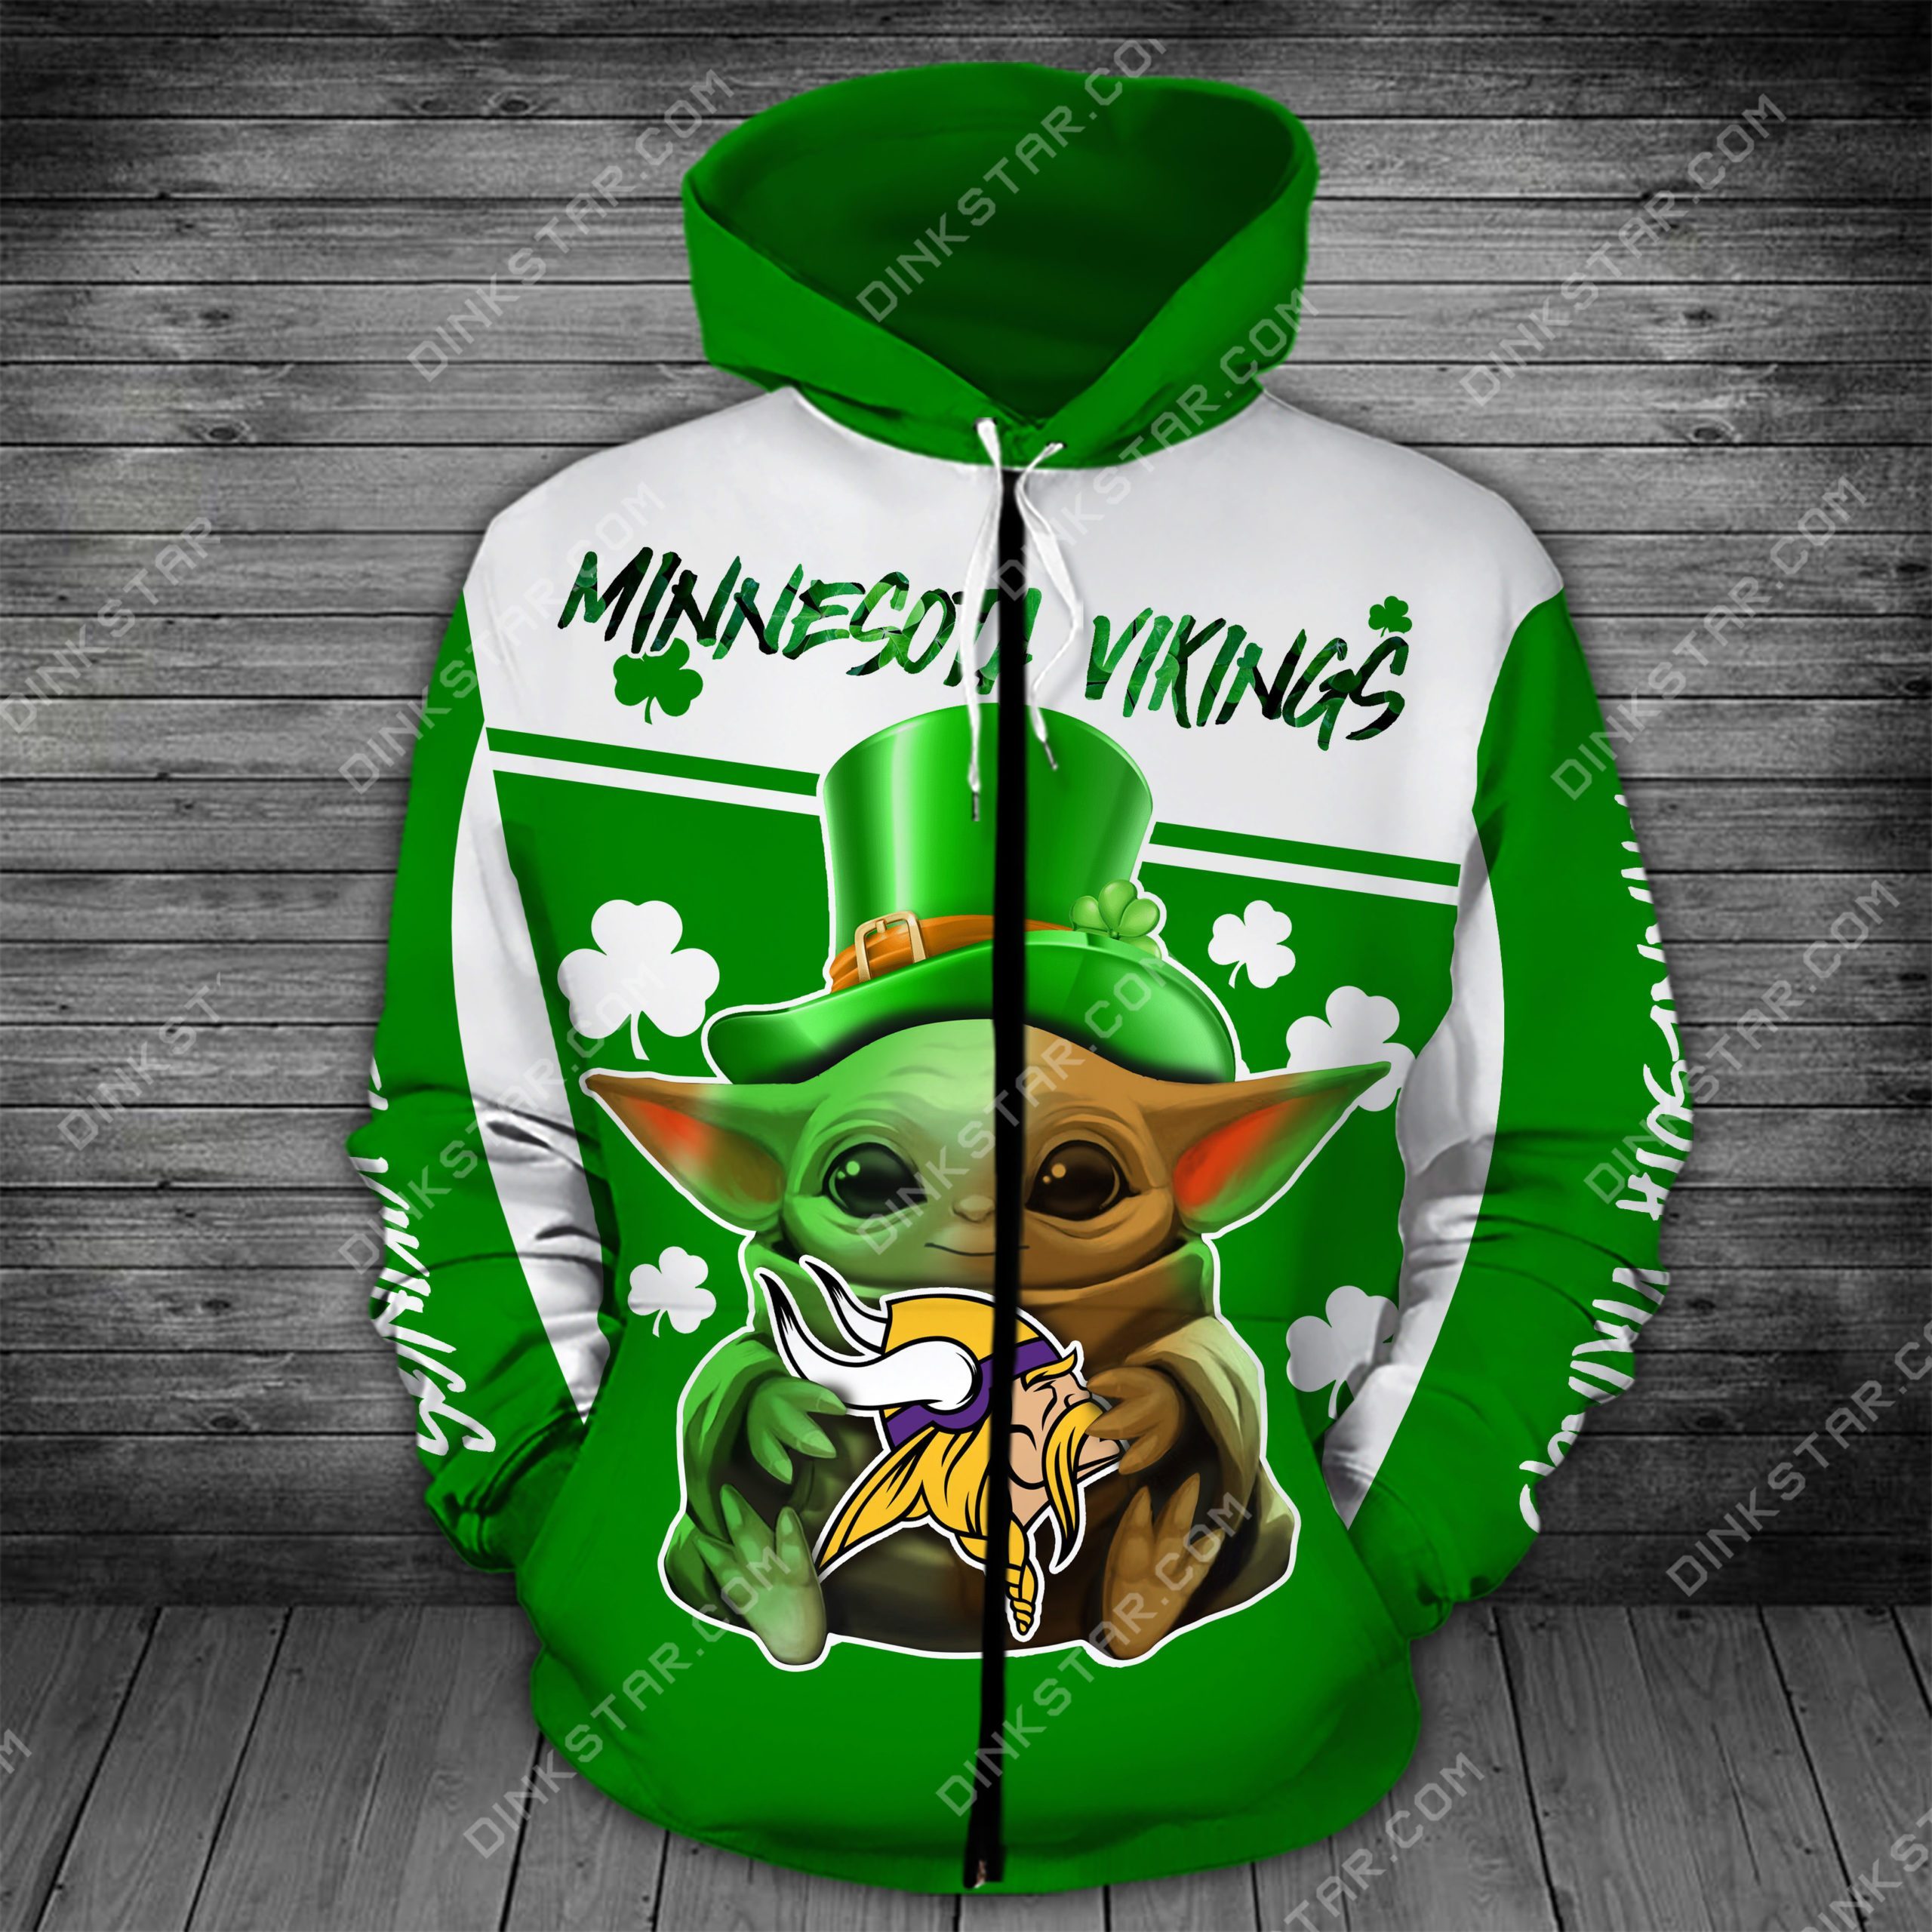 Minnesota vikings baby yoda saint patrick's day full printing zip hoodie